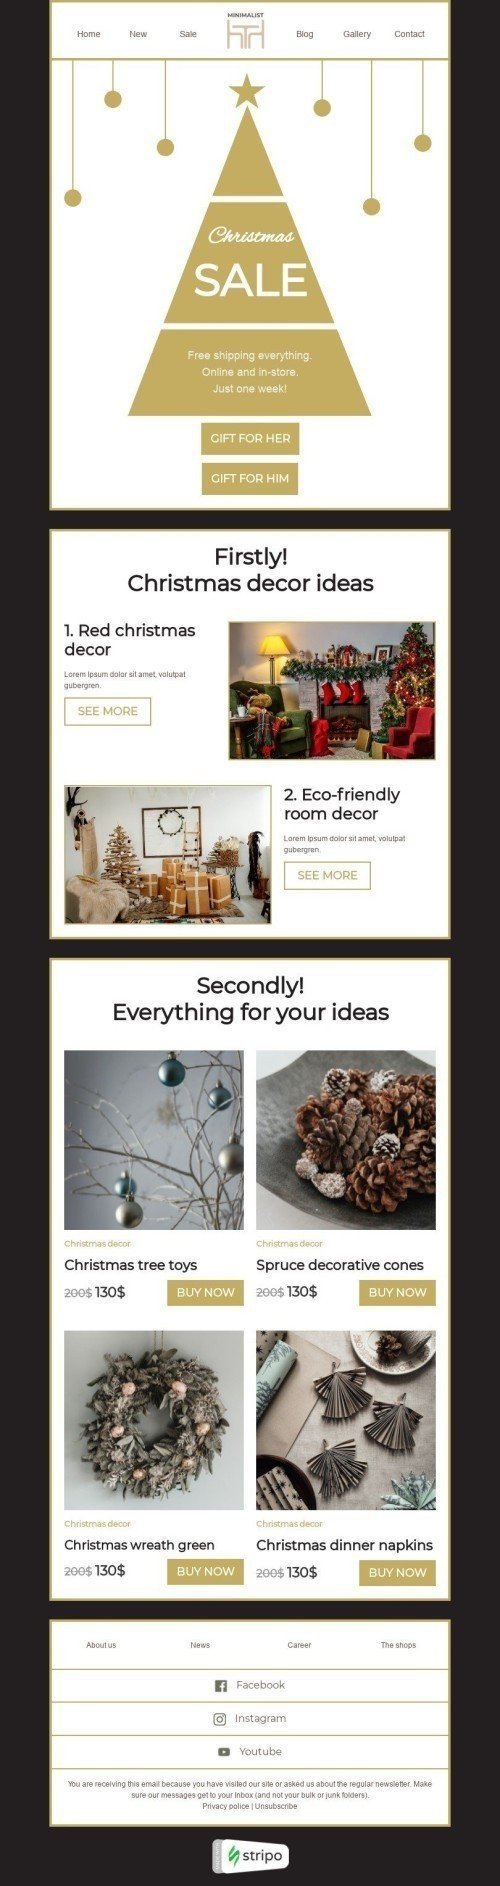 Modelo de E-mail de «Ideias de decoração de natal» de Natal para a indústria de Móveis, Decoração e DIY Visualização de desktop